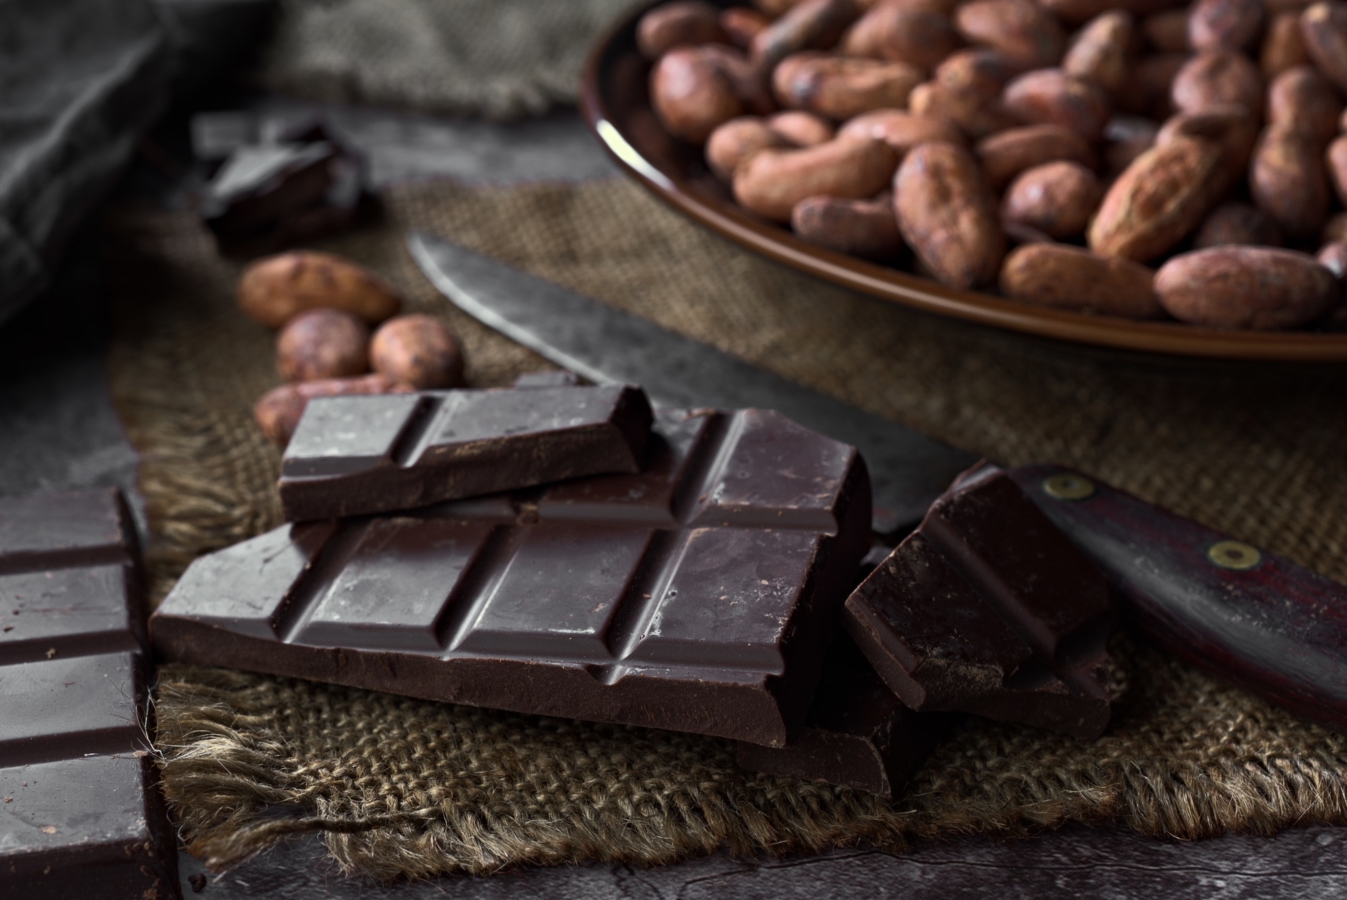 Stücke von Schokolade und Kakaosamen